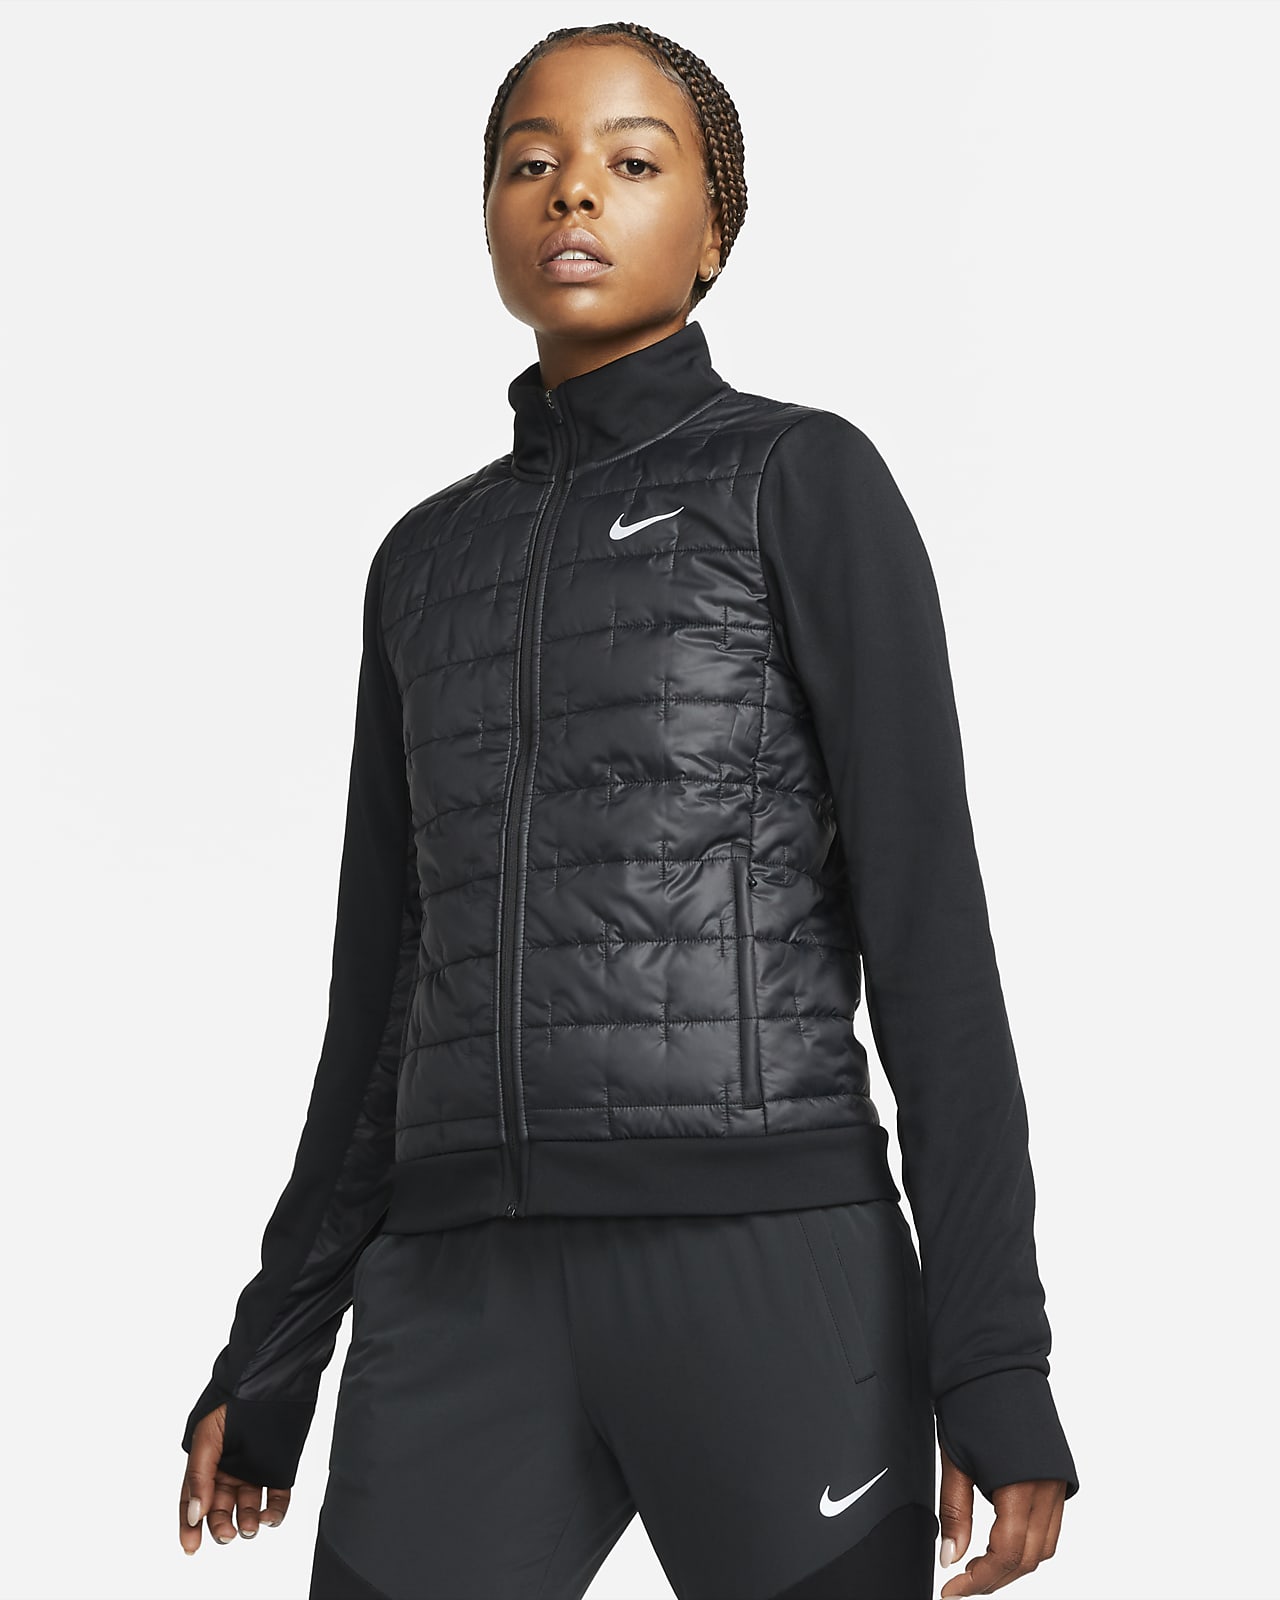 Damska kurtka do biegania z syntetycznym wypełnieniem Nike Therma-FIT